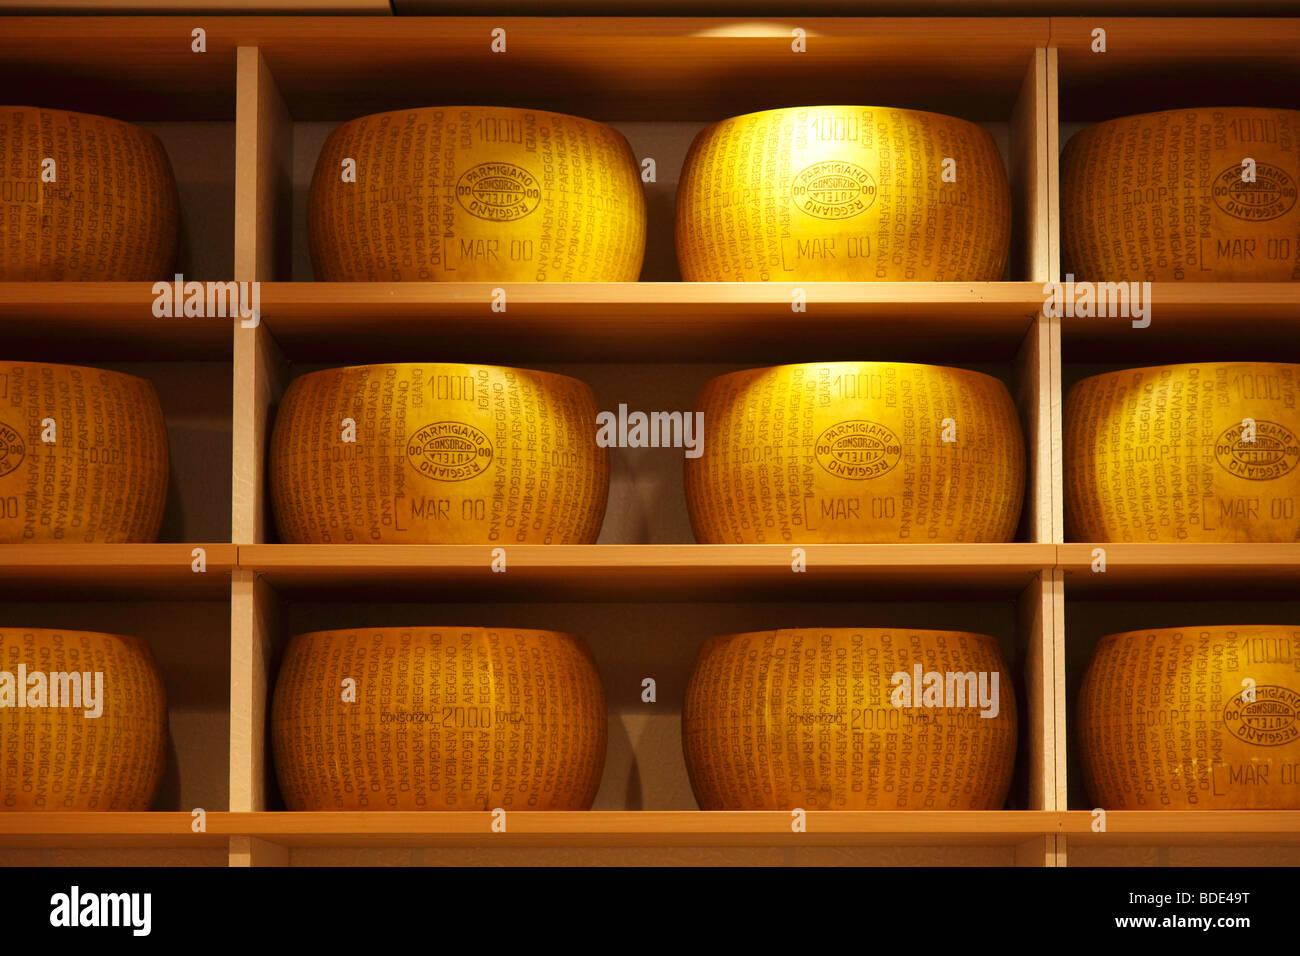 Bandeja de quesos (Reggiano-Parmigiano) en un supermercado Foto de stock